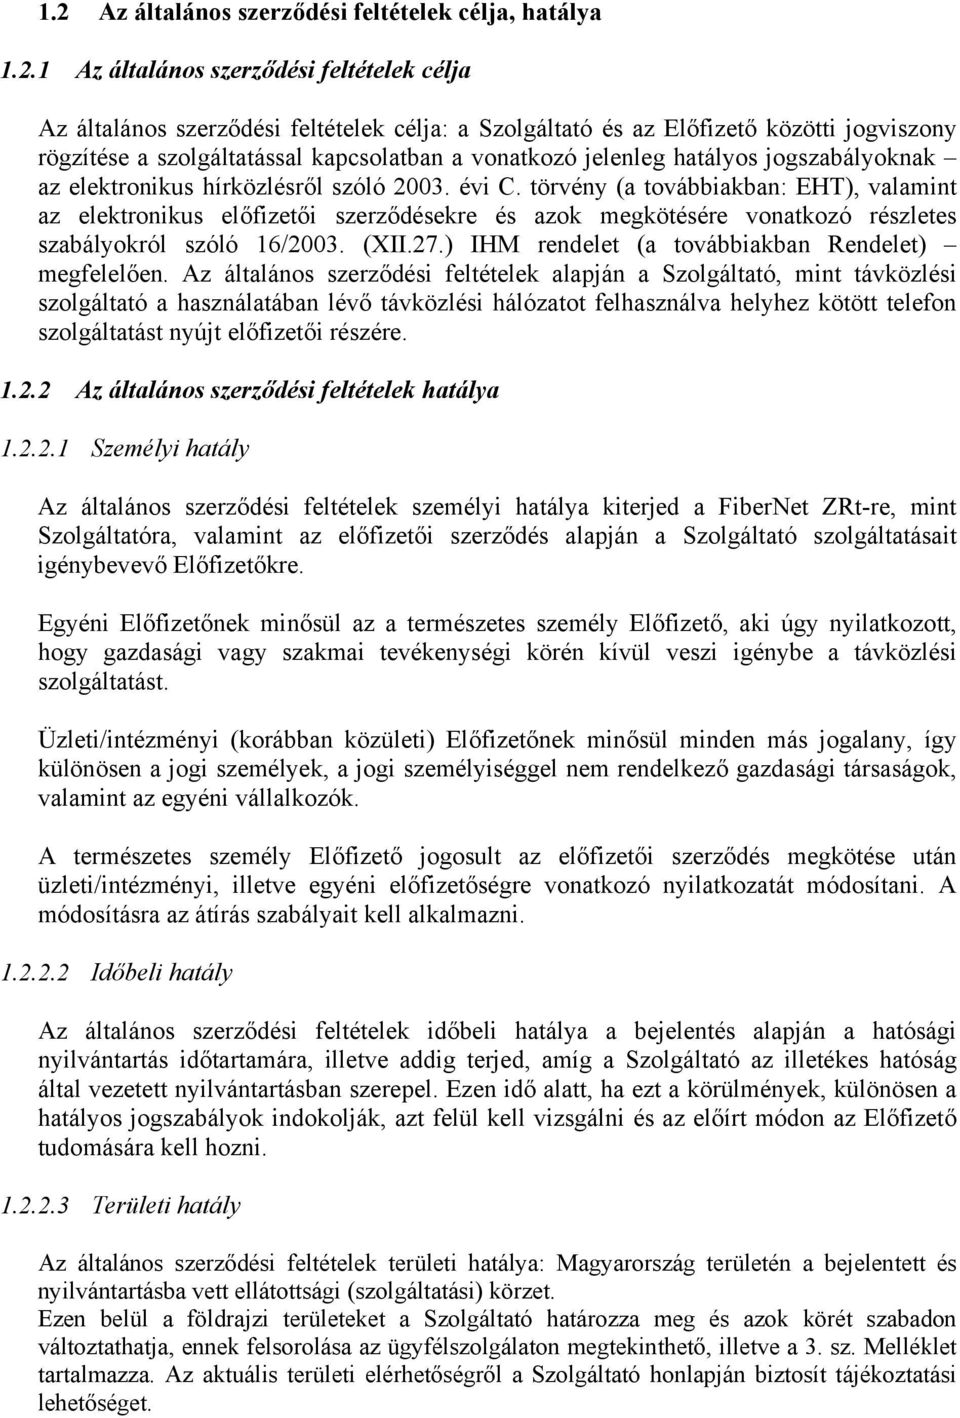 törvény (a továbbiakban: EHT), valamint az elektronikus előfizetői szerződésekre és azok megkötésére vonatkozó részletes szabályokról szóló 16/2003. (XII.27.